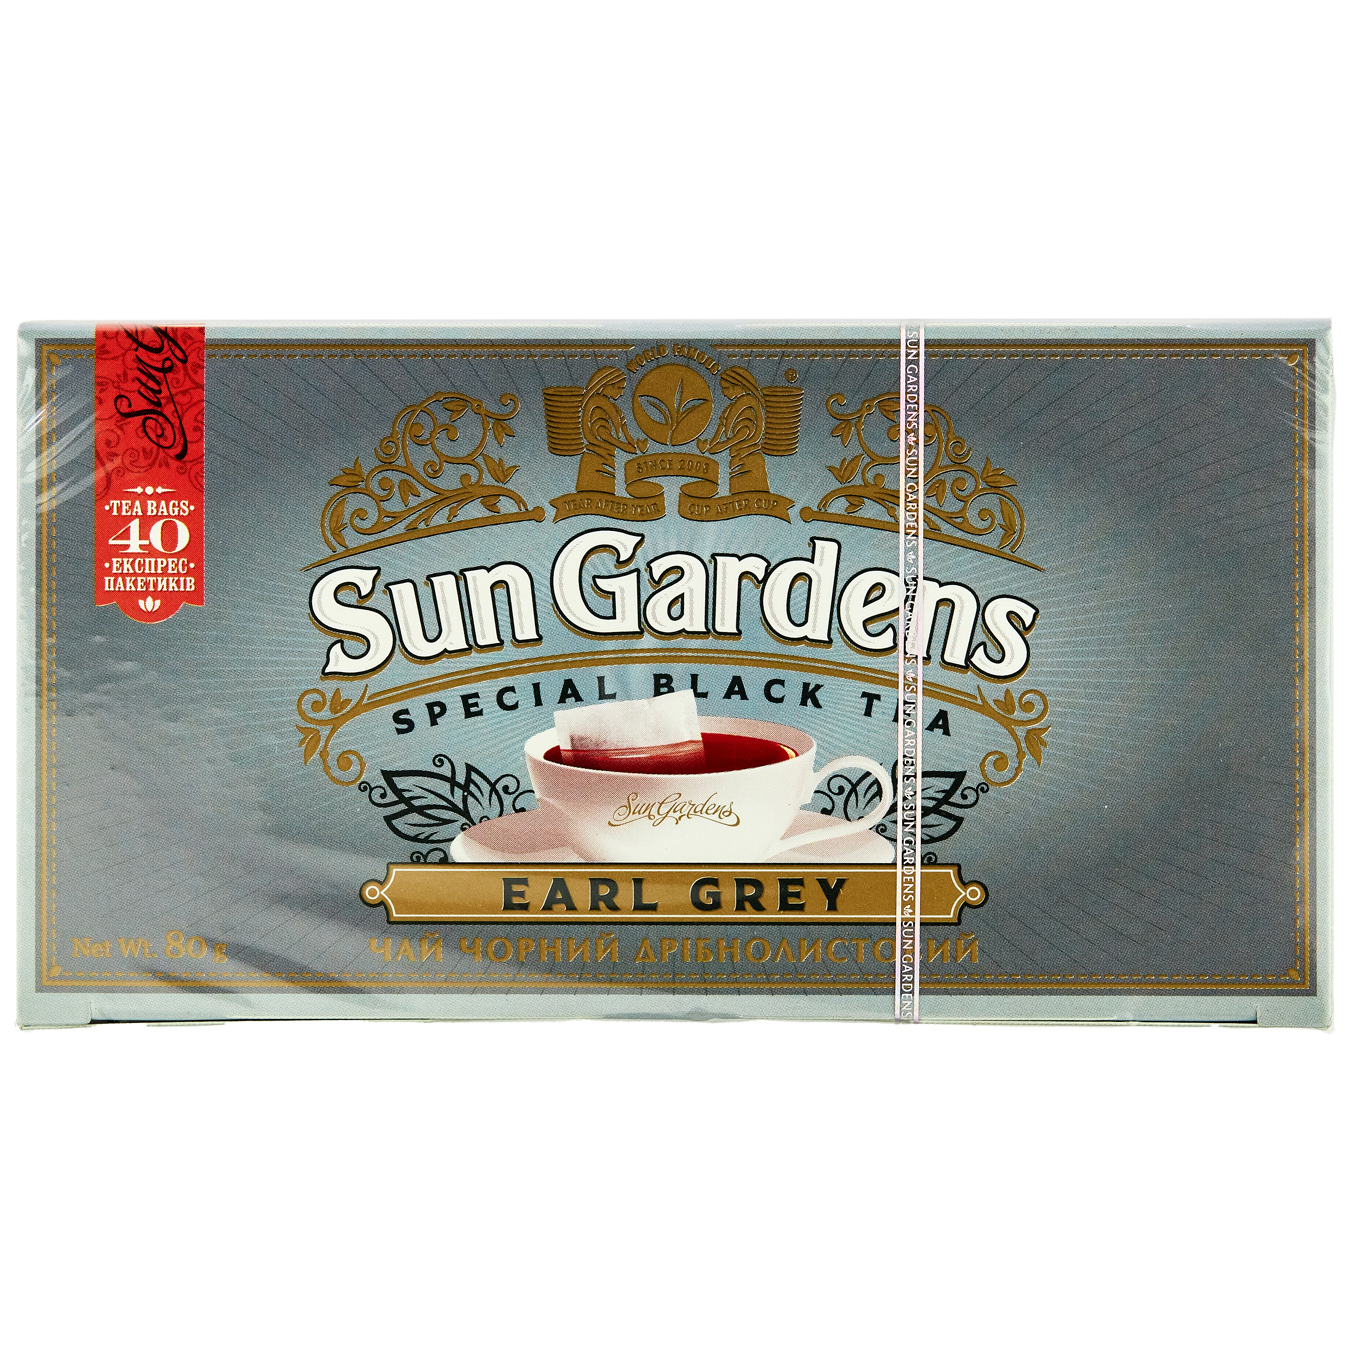 Sun Gardens Earl Gray Black Tea 40pack 2g
